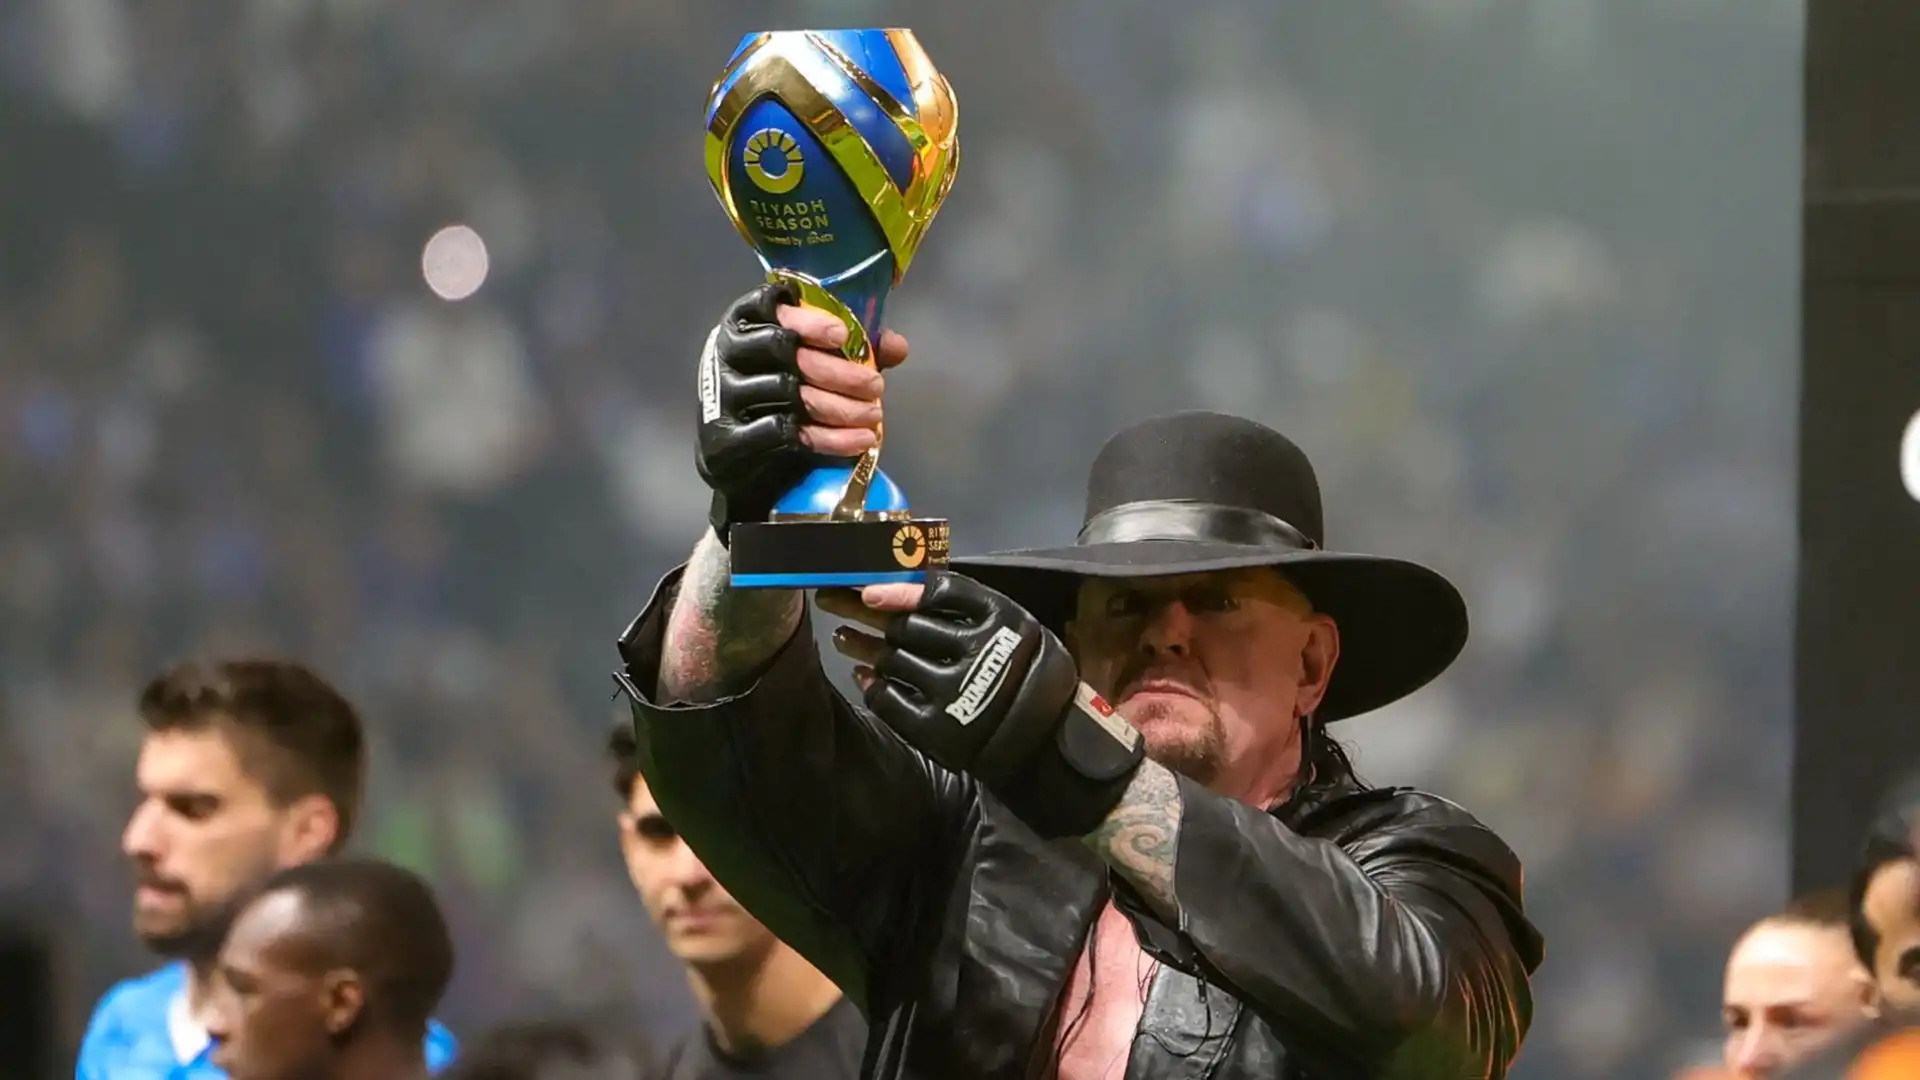 The Undertaker ha alzato il trofeo prima della partita sotto lo sguardo divertito di Ronaldo e degli altri giocatori